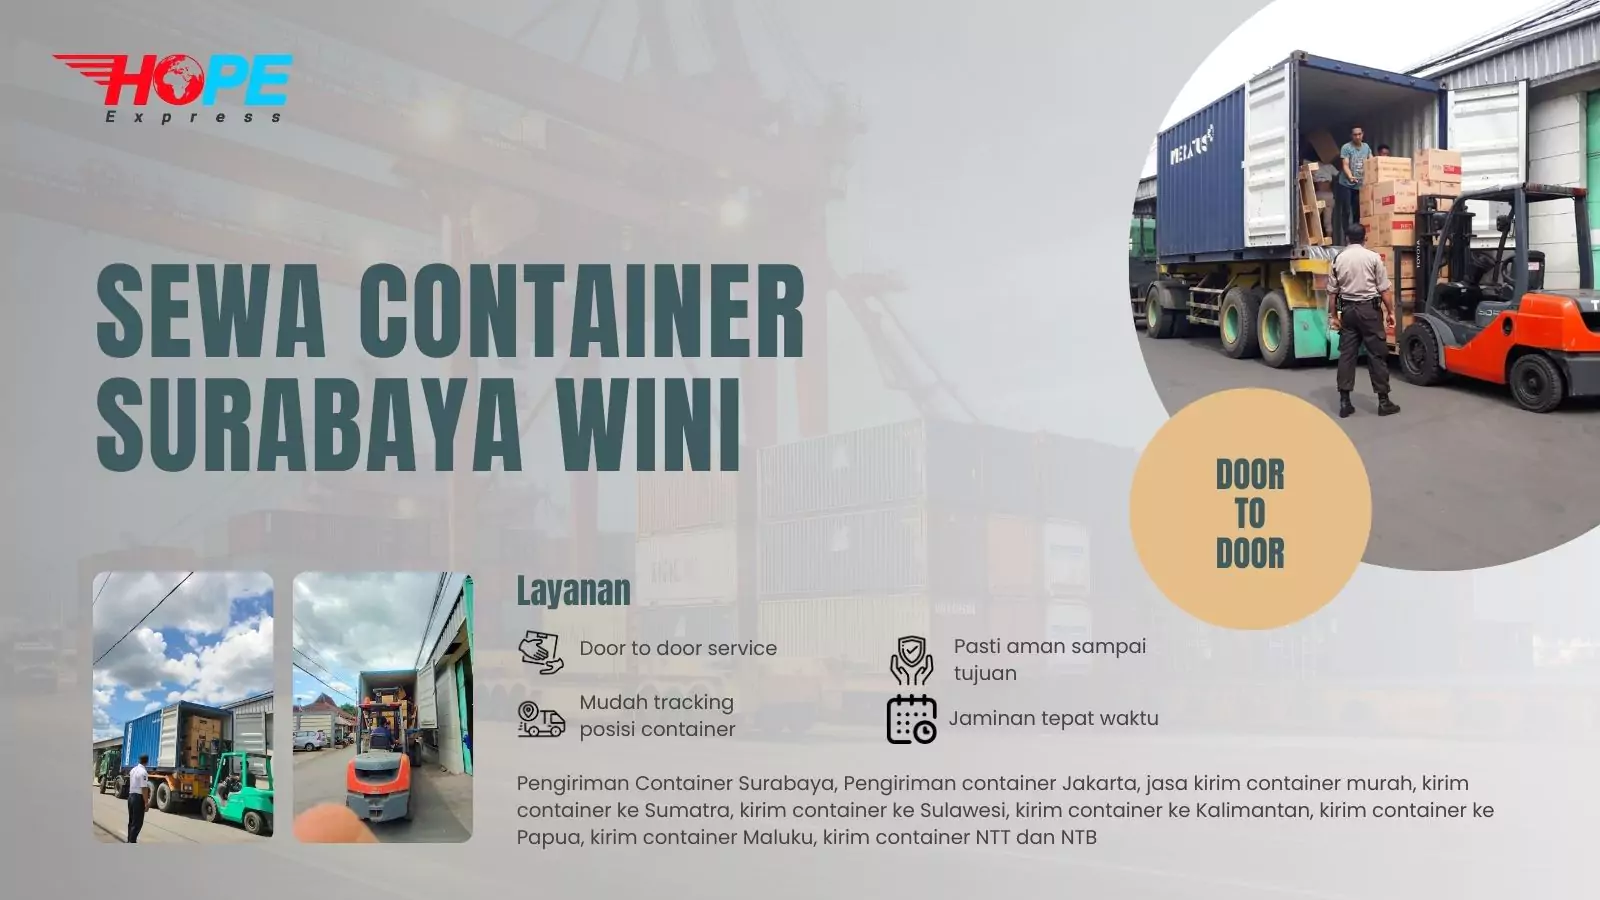 Sewa Container Surabaya Wini